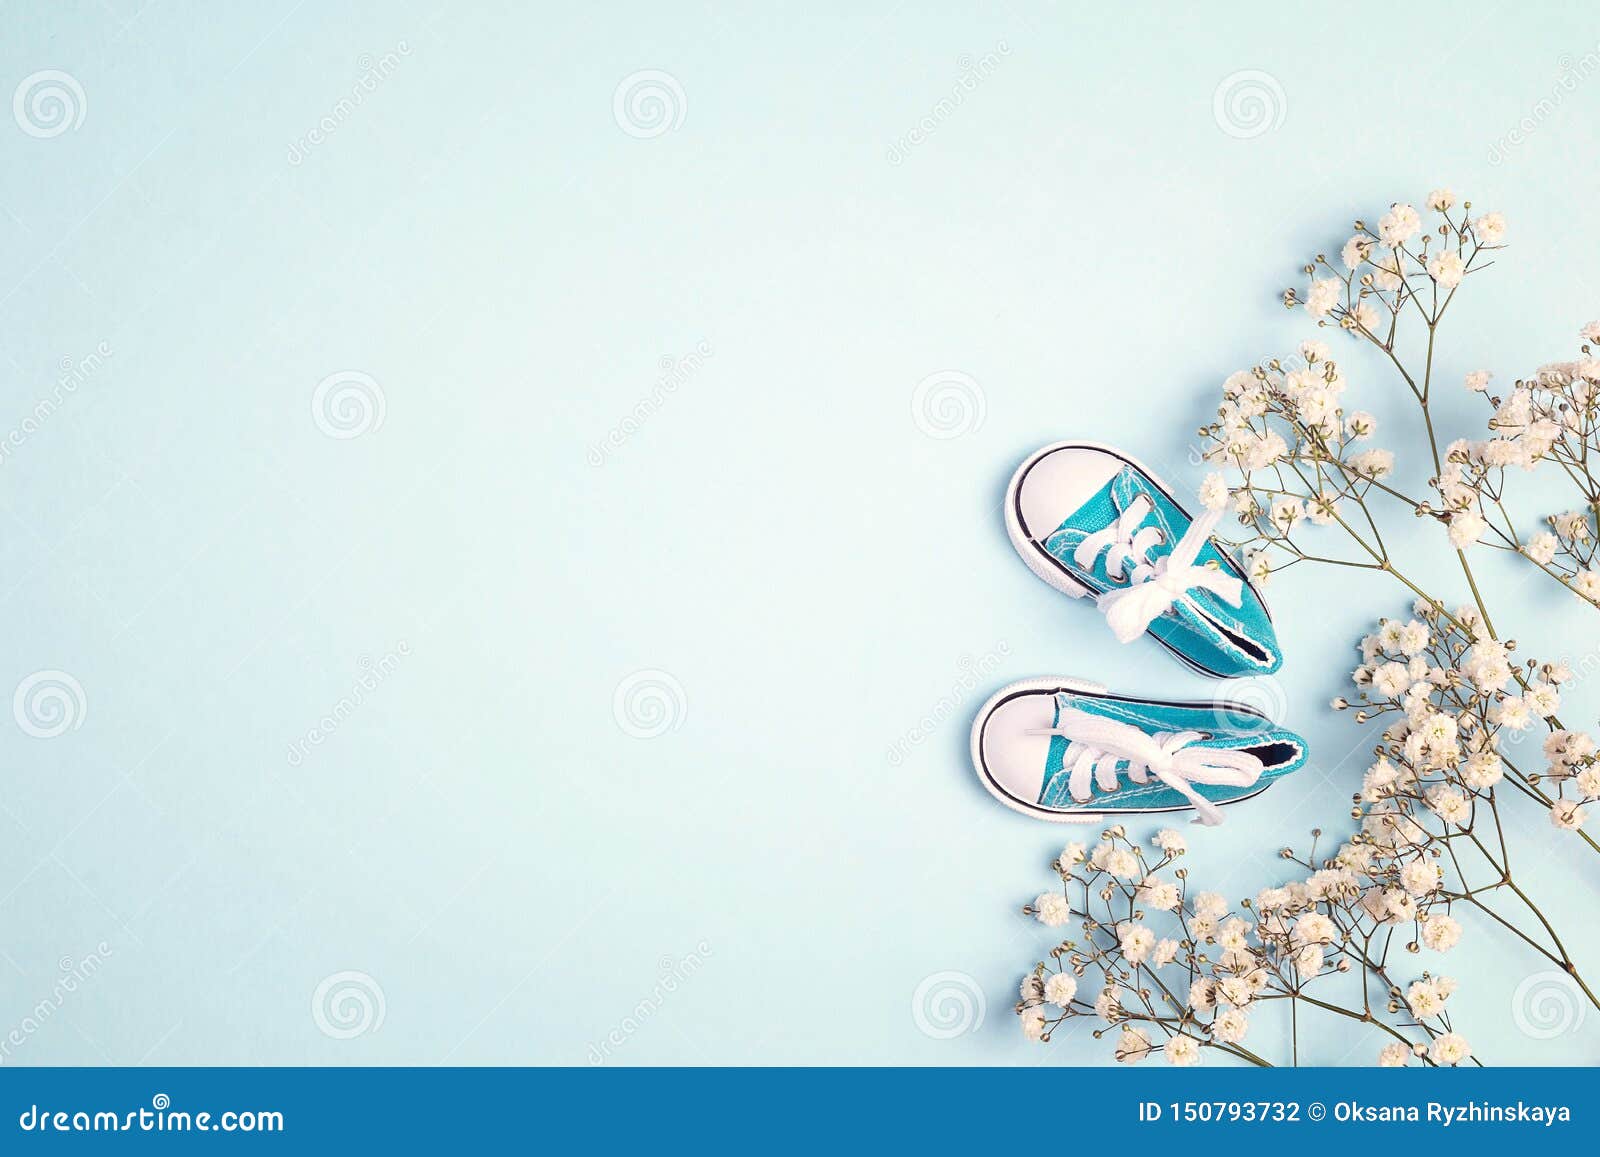 Đôi giày dễ thương cho bé trai màu xanh dương với hoa trắng nhỏ xinh xắn sẽ khiến bé yêu của bạn trông thật ngộ nghĩnh và dễ thương. Chúng tôi hứa hẹn sẽ mang đến cho bạn những chọn lựa giày tuyệt vời nhất để bé trai của bạn trông thật phong cách và đáng yêu.